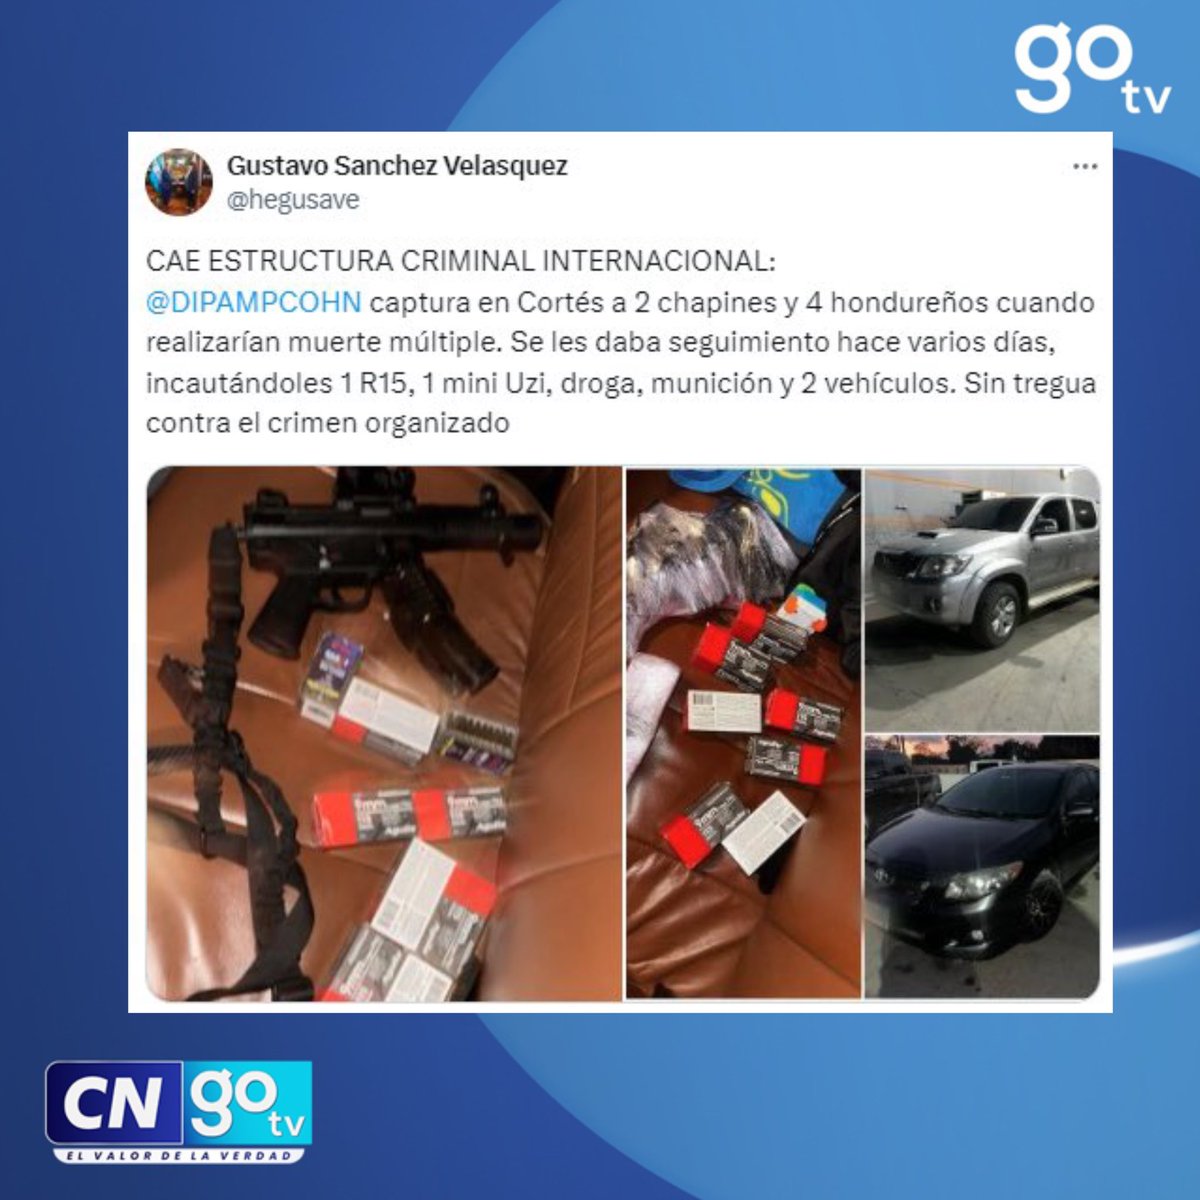 #CNGOTV 🔴 Secretario de Seguridad, Gustavo Sánchez Velásquez, informa la captura de seis miembros de una estructura criminal internacional en el departamento de Cortés. #GustavoSanchez #Cortés #Seguridad